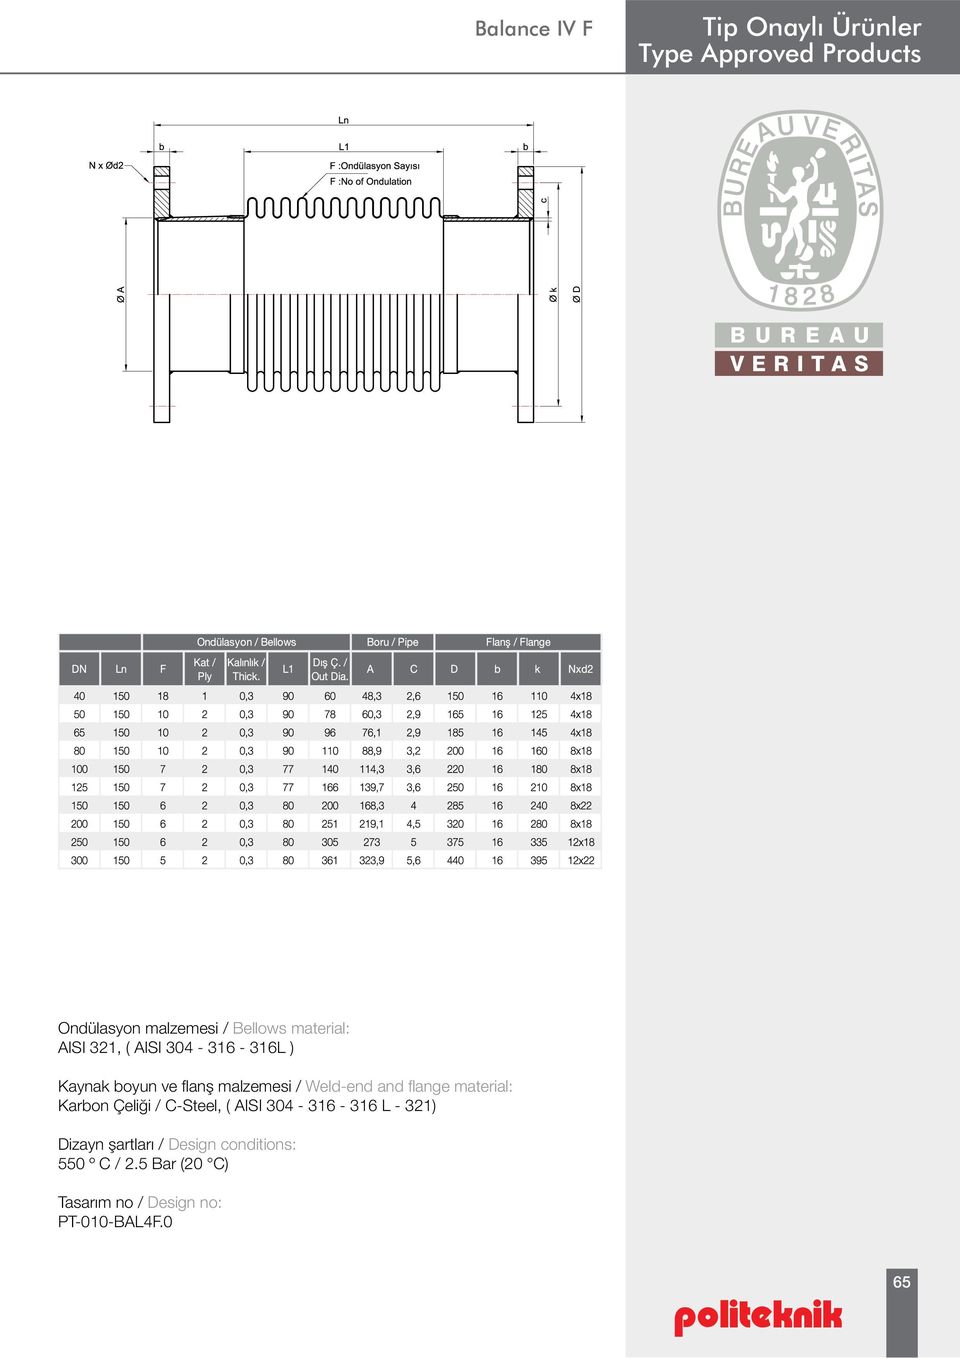 Çeliği / C-Steel, ( AISI 304-316 - 316 L - 321) Dizayn şartları / Design